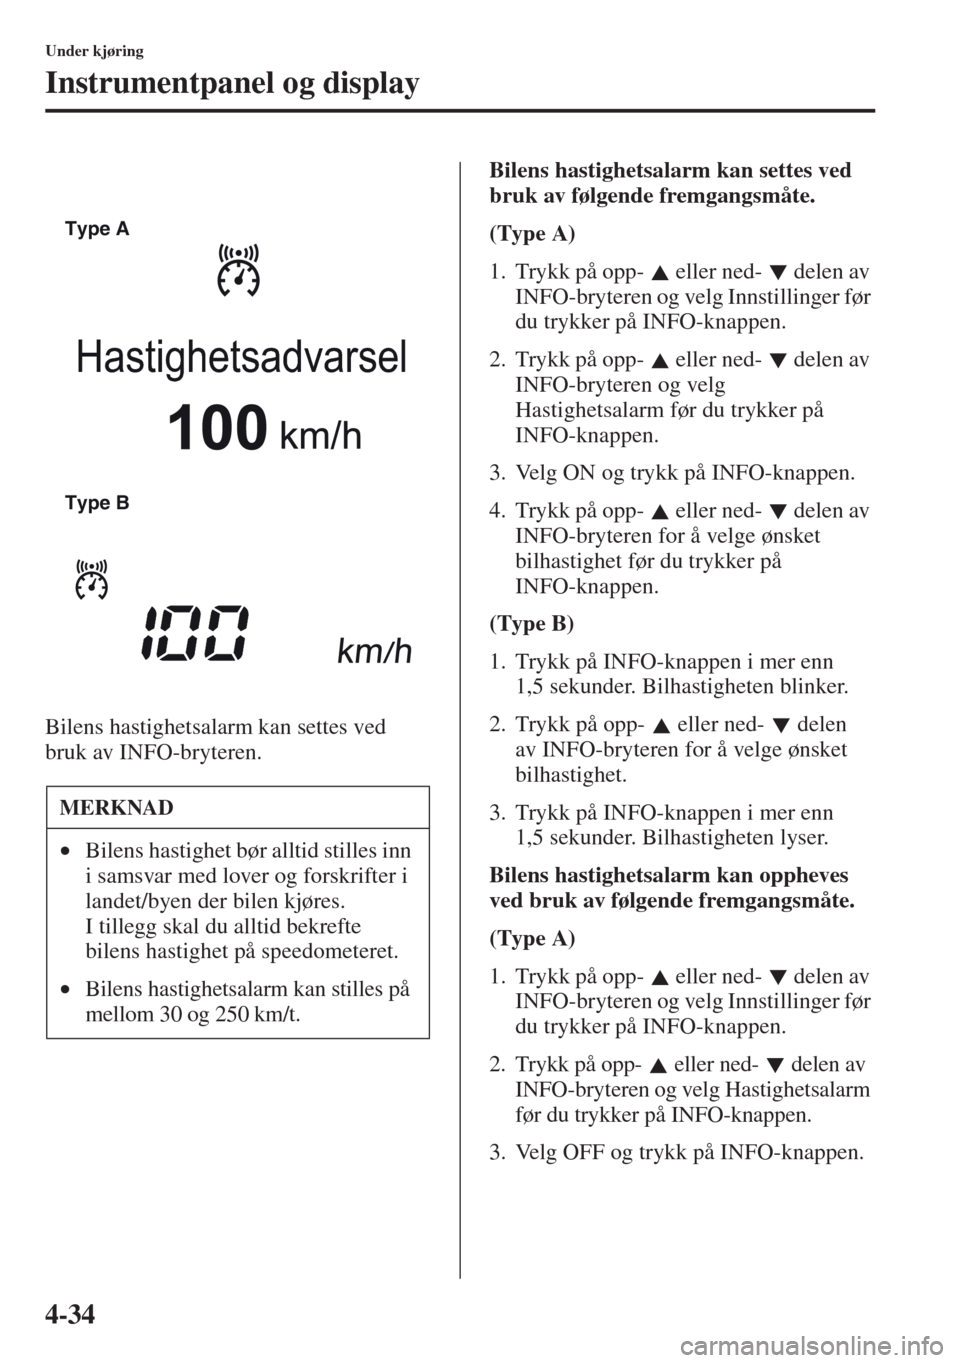 MAZDA MODEL CX-5 2013  Brukerhåndbok (in Norwegian) 4-34
Under kjøring
Instrumentpanel og display
Bilens hastighetsalarm kan settes ved 
bruk av INFO-bryteren.Bilens hastighetsalarm kan settes ved 
bruk av følgende fremgangsmåte.
(Type A)
1. Trykk p